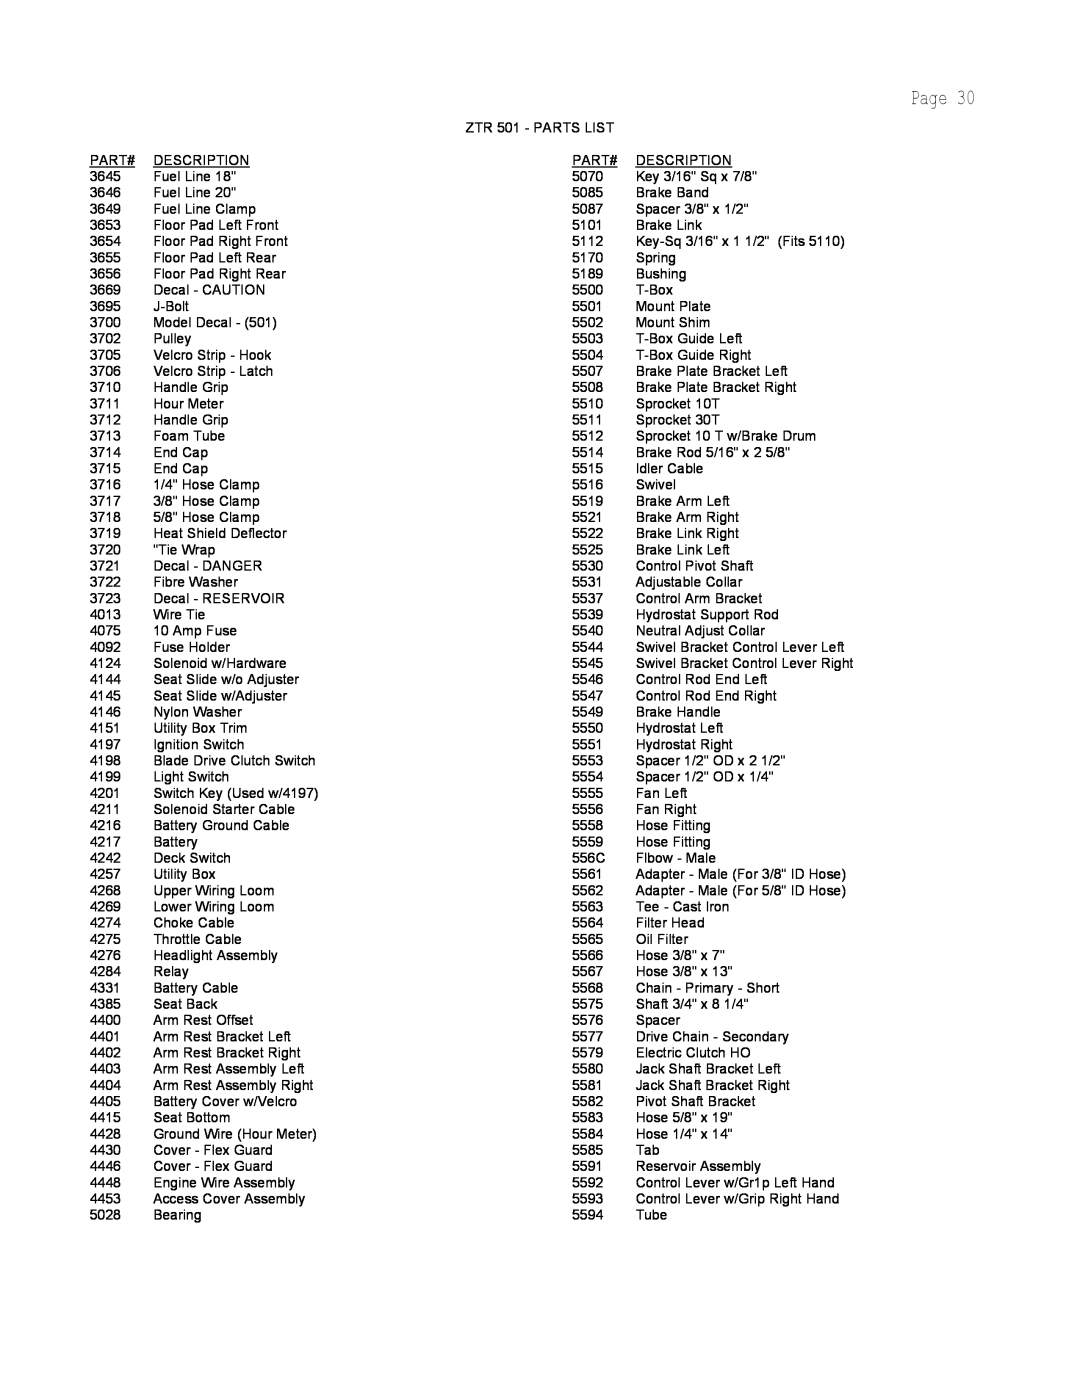 Dixon manual Page, ZTR 501 - PARTS LIST 